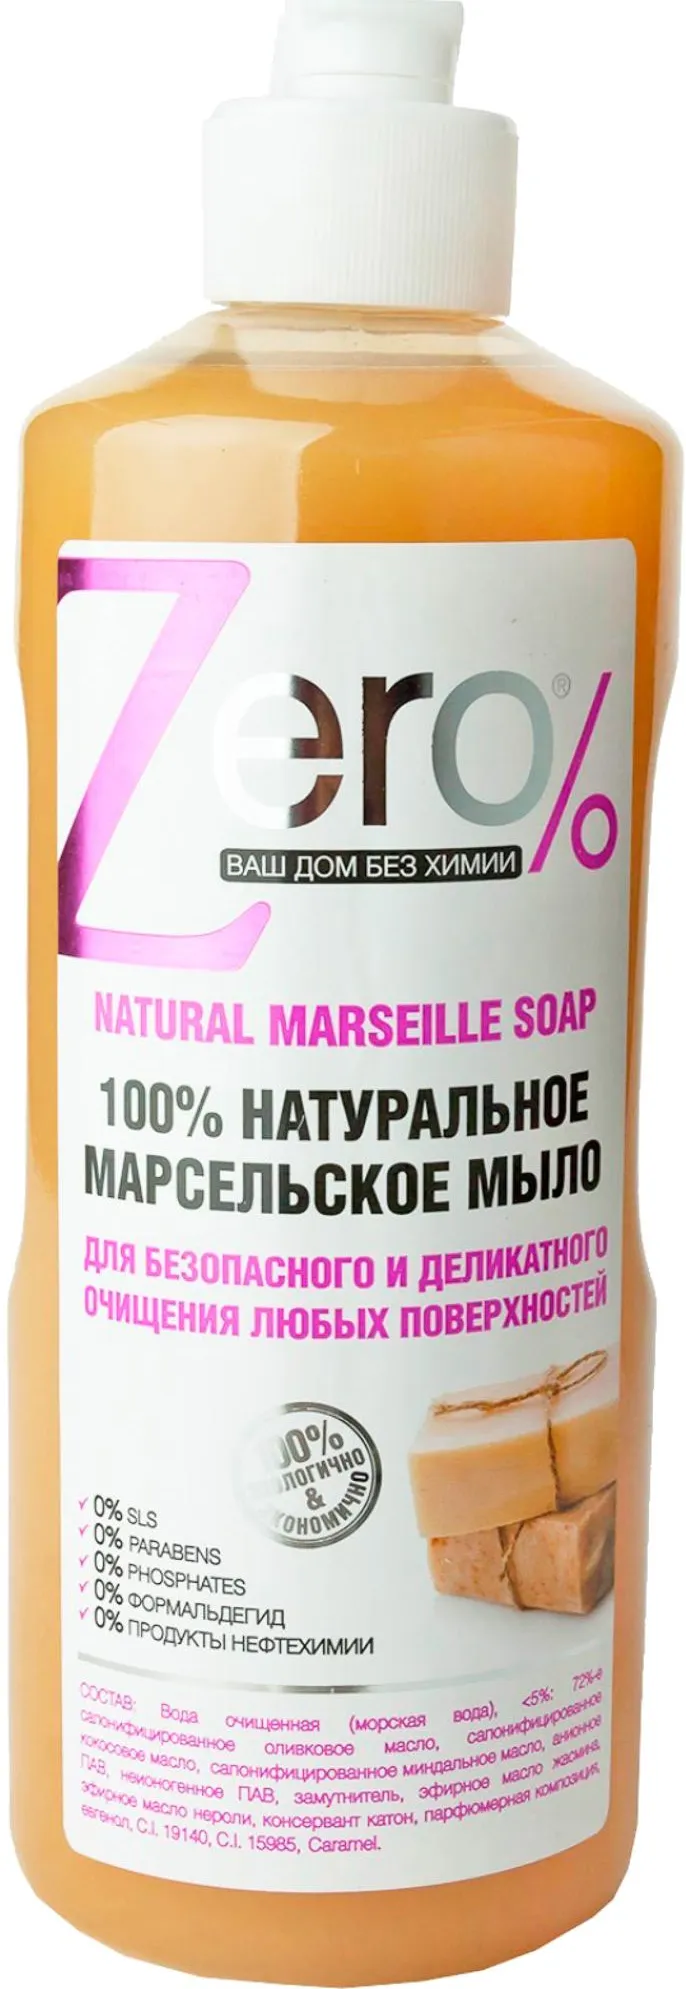 Zero 100% натуральное марсельское мыло для безопасного и деликатного очищения любых поверхностей 500 мл